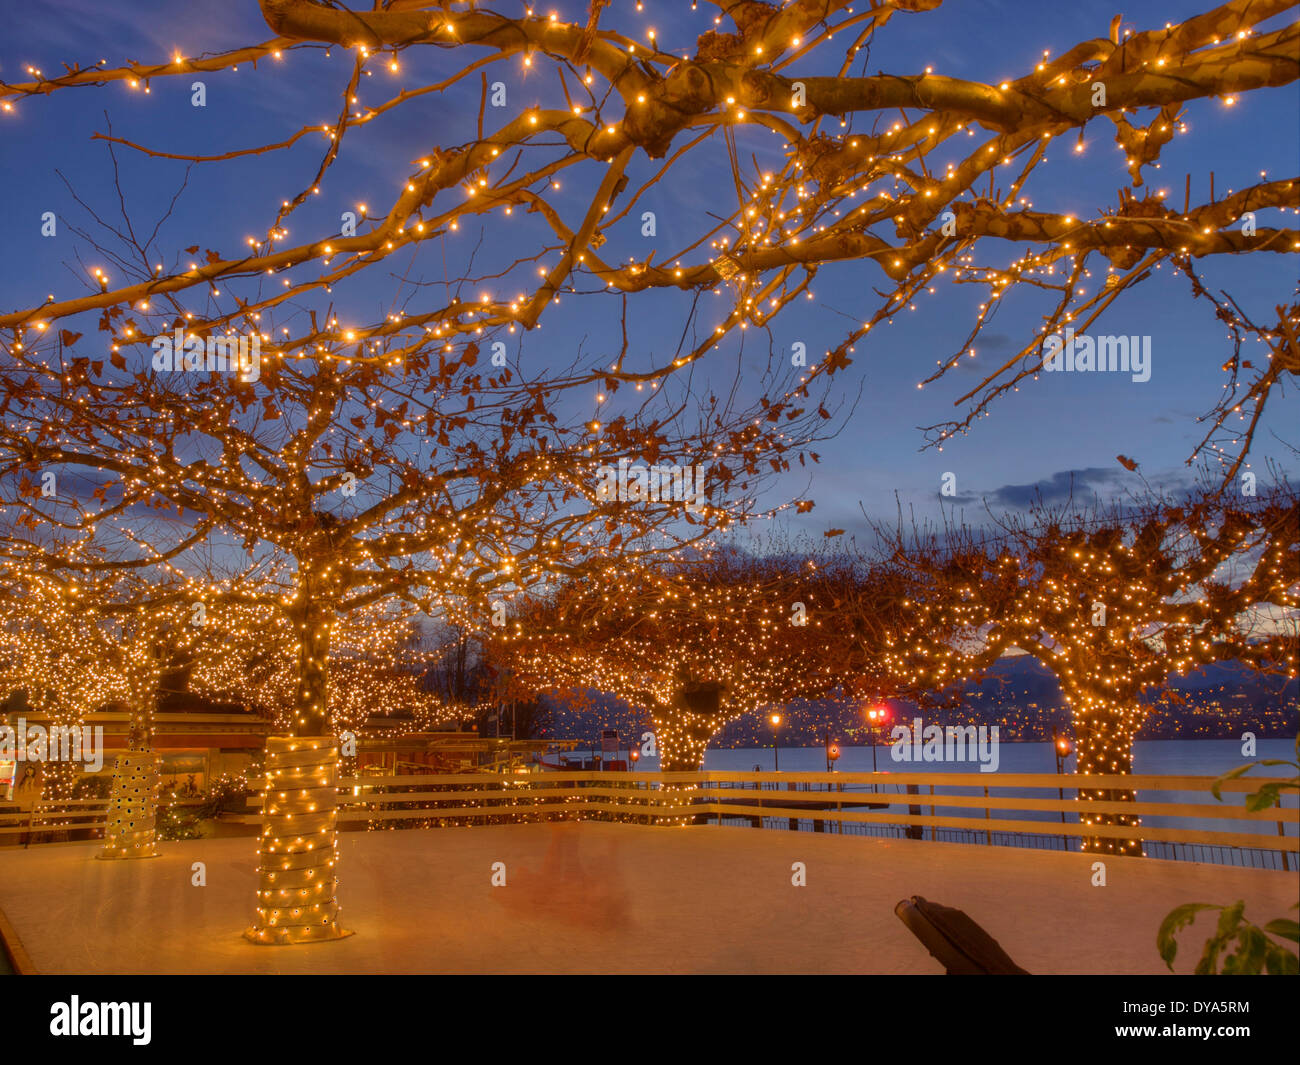 Zurich Switzerland Christmas Stockfotos und -bilder Kaufen - Alamy